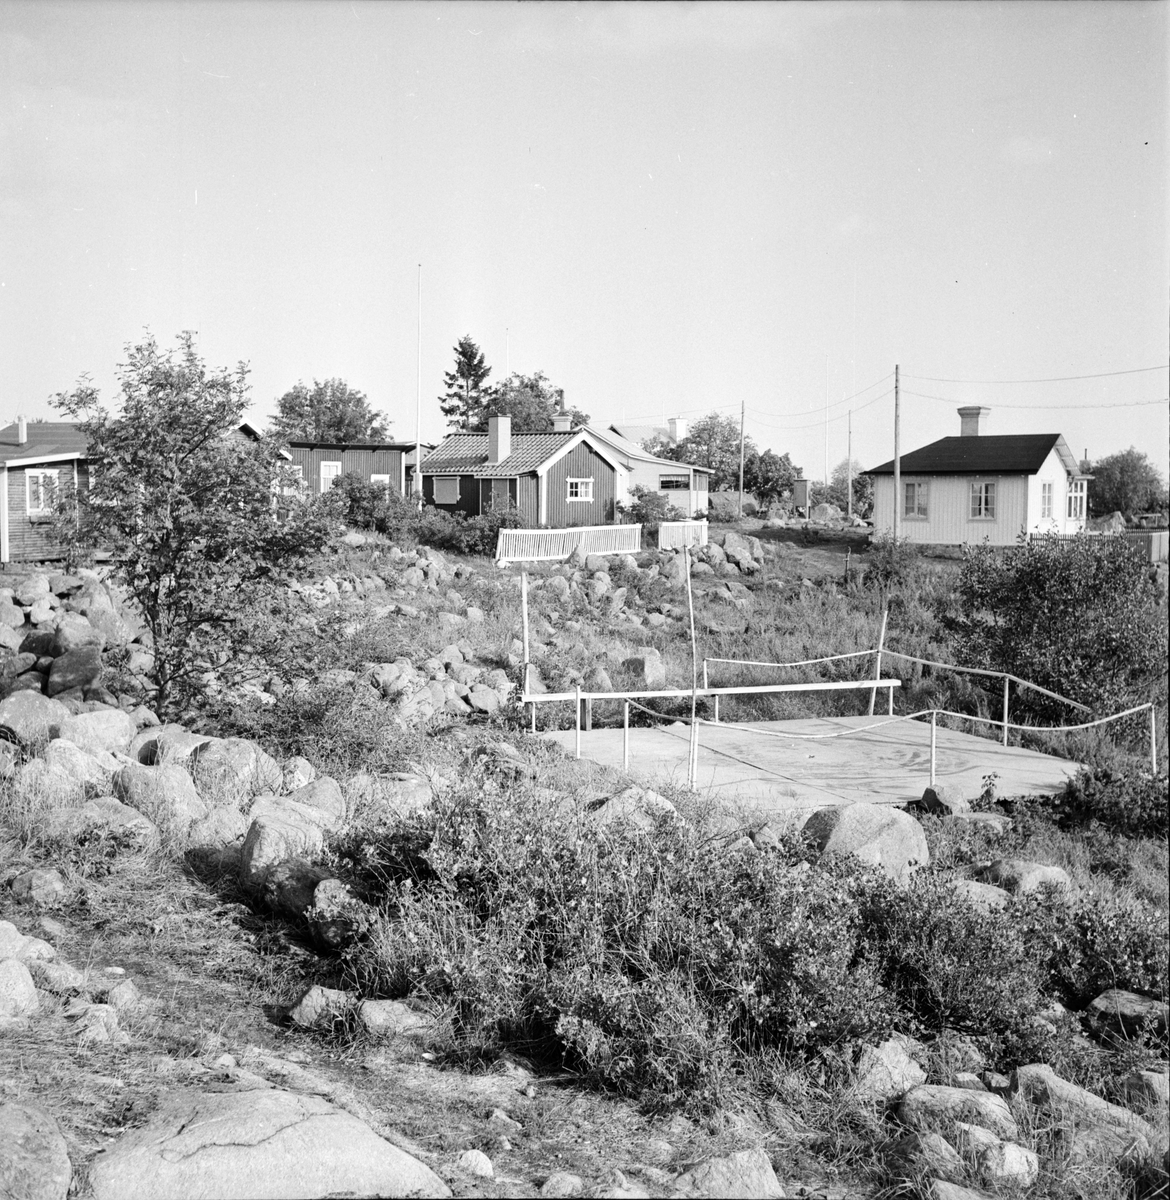 Rönnskärs lotsplats.
Sjömanspastorn på besök.
14/9-1966